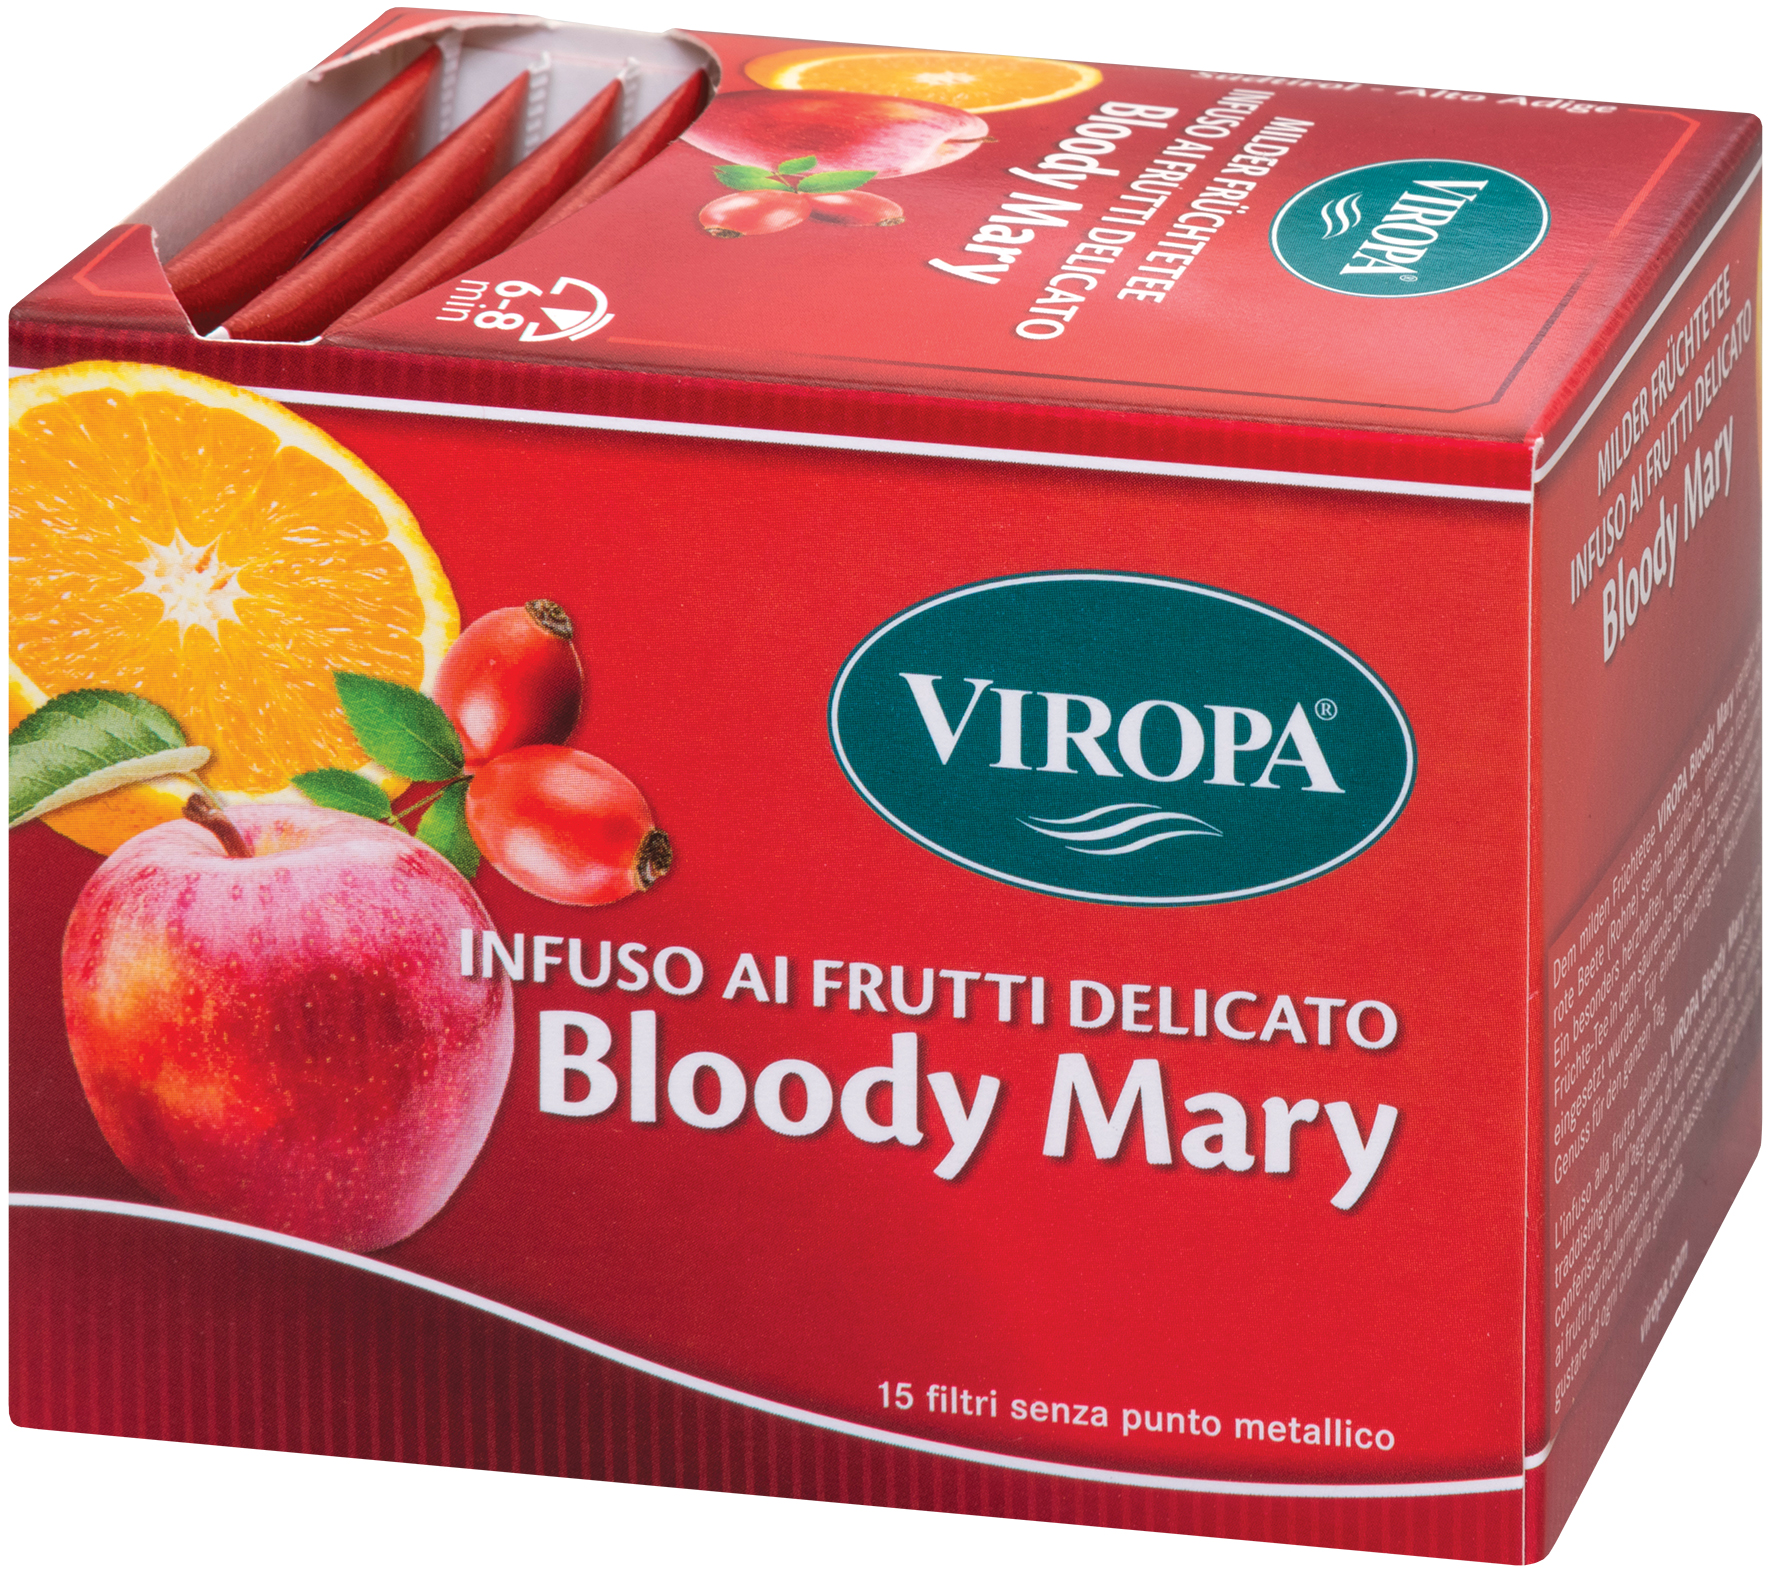 Infuso ai Frutti  Bloody Mary Viropa 